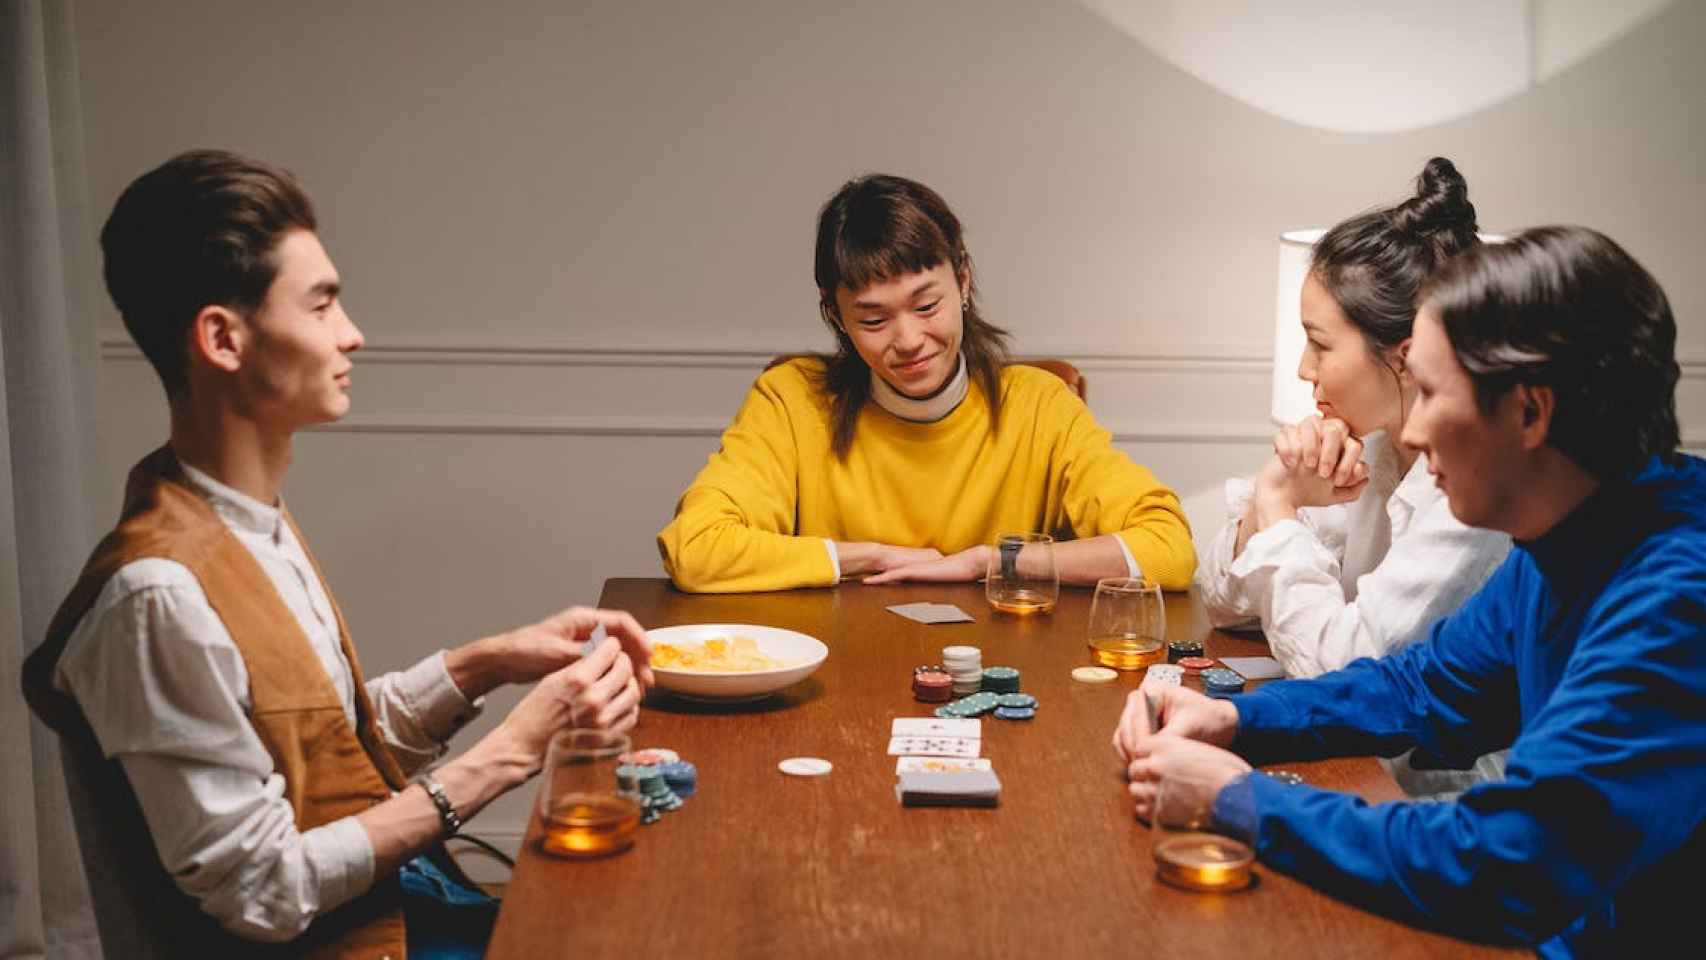 Asociación en la mesa de póquer